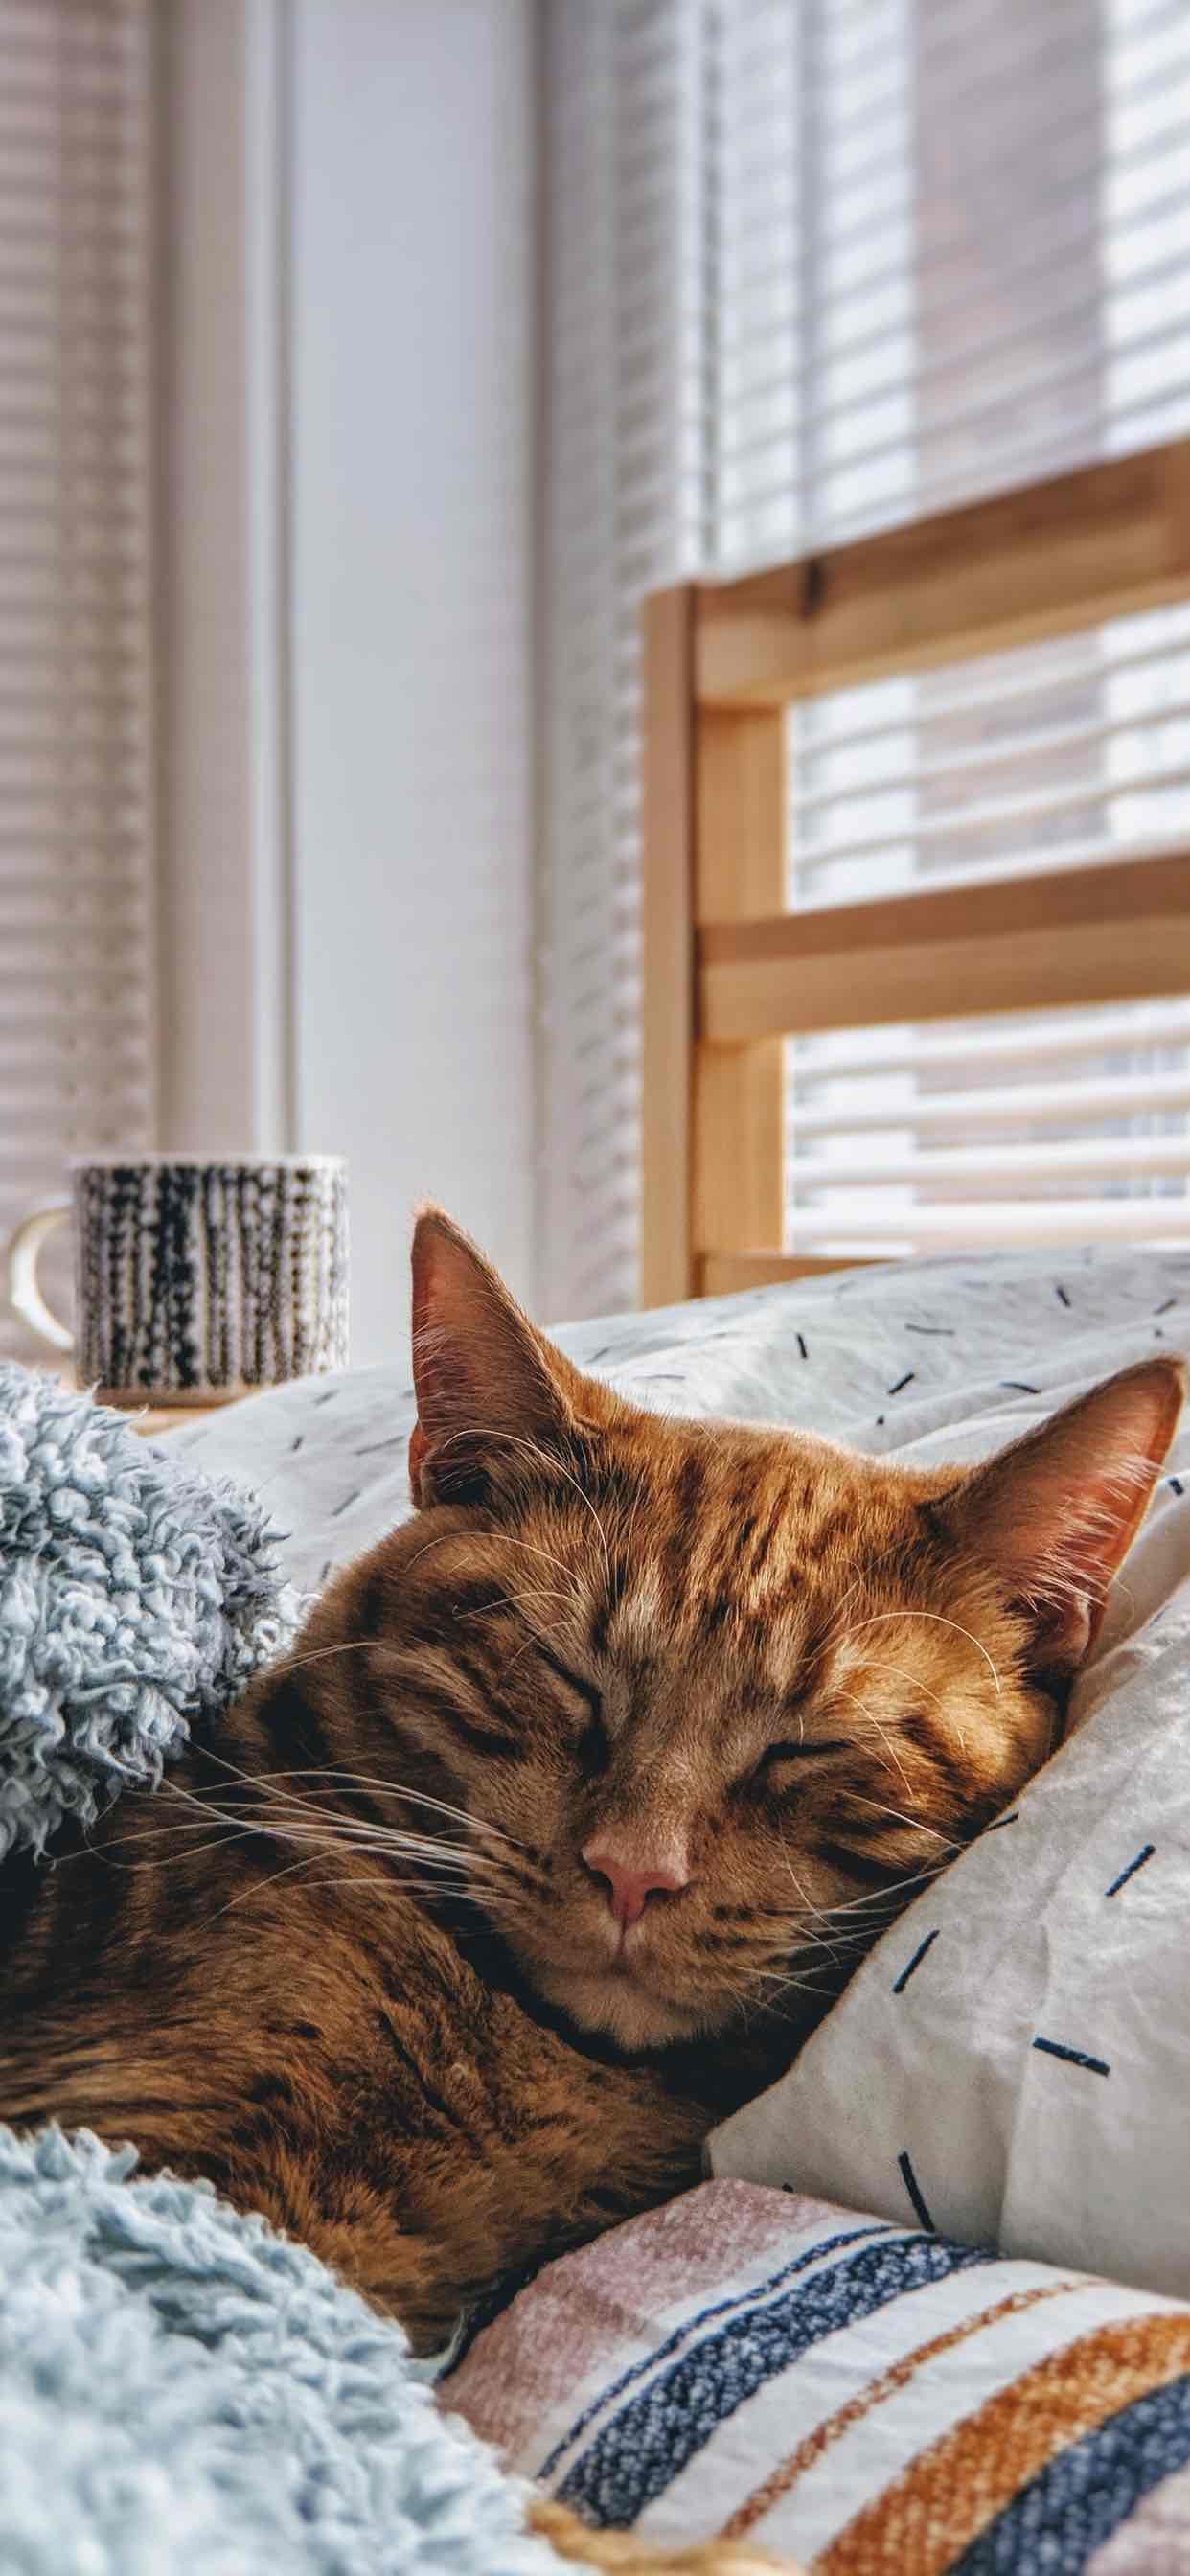 Beautiful Sleeping Cat Wallpaper for iPhone Xs Max. Cute Cat